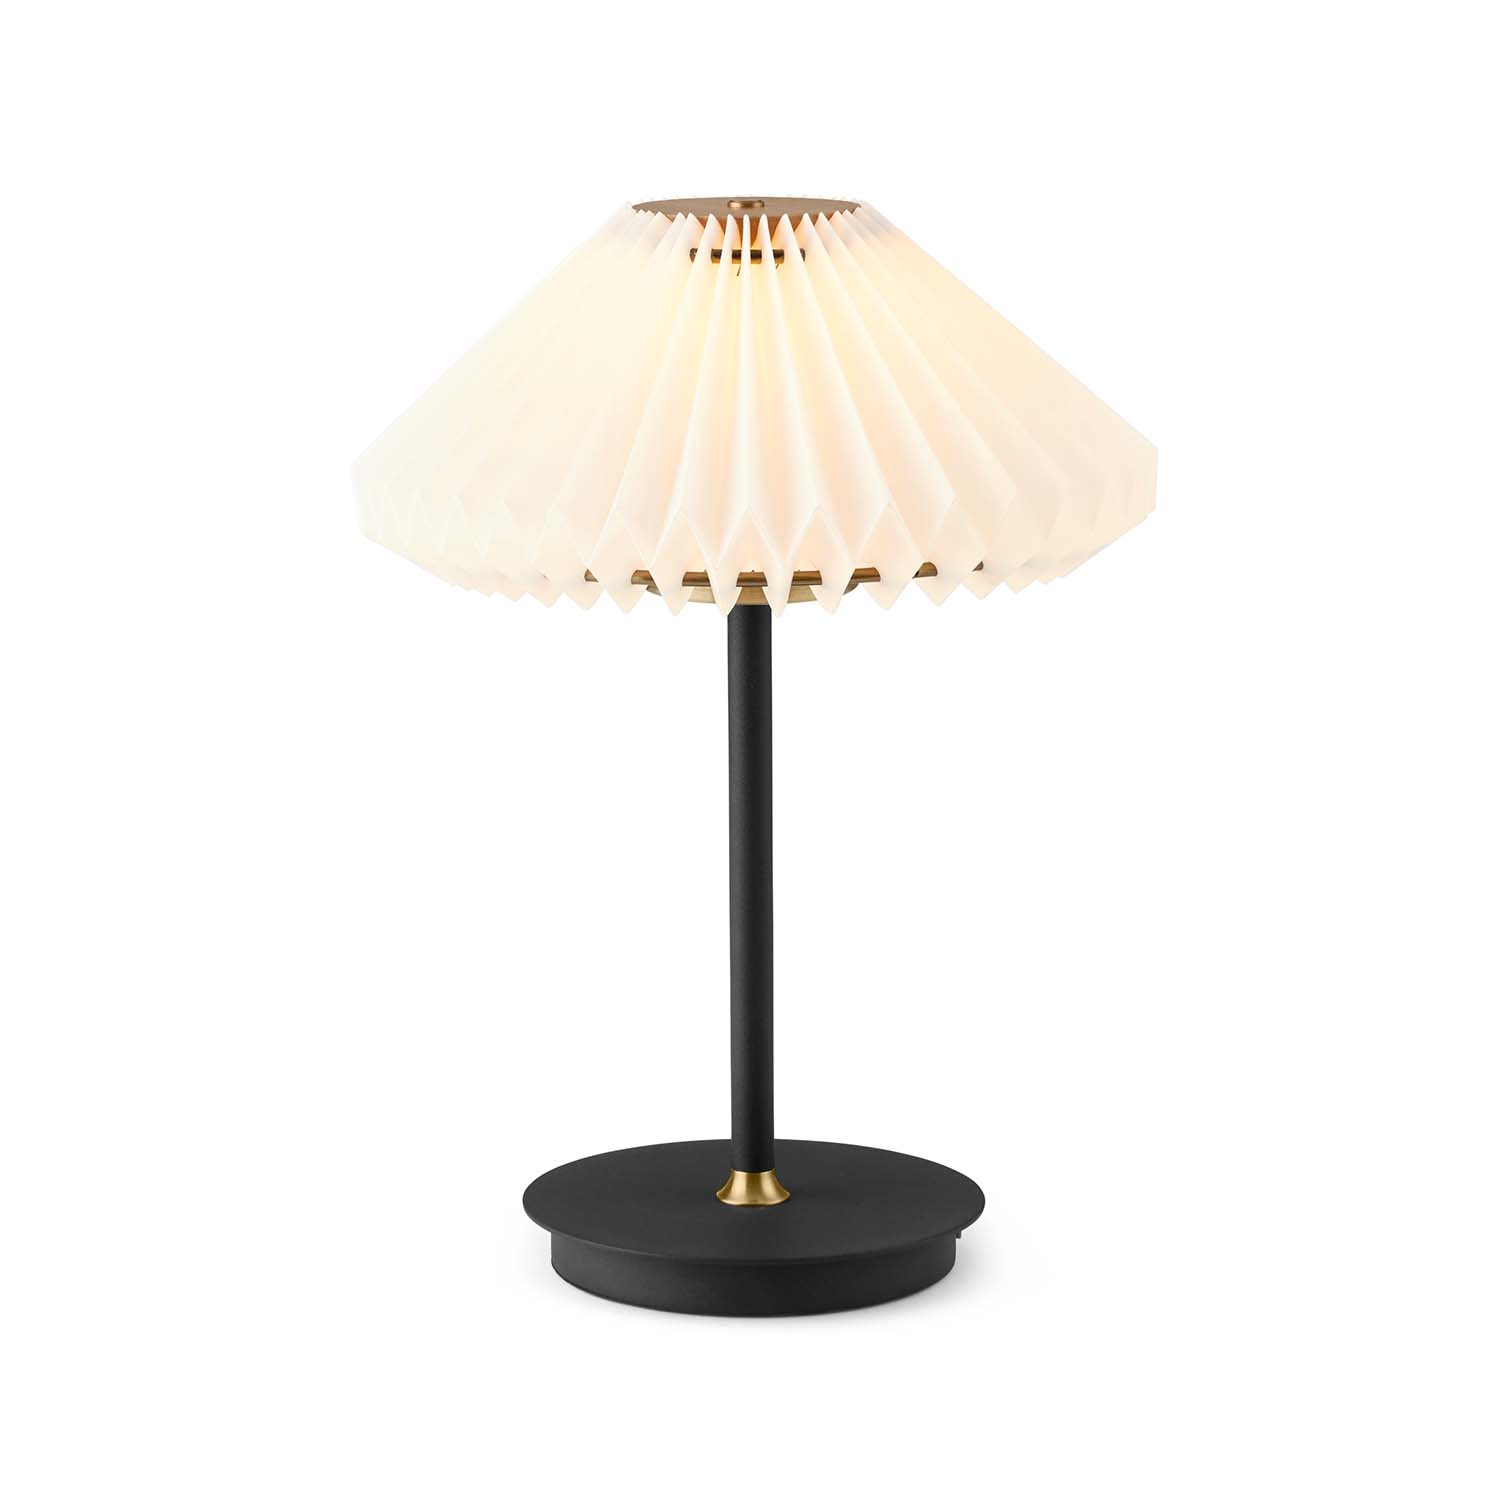 PARIS TO GO - Wireless designer nomadic table lamp